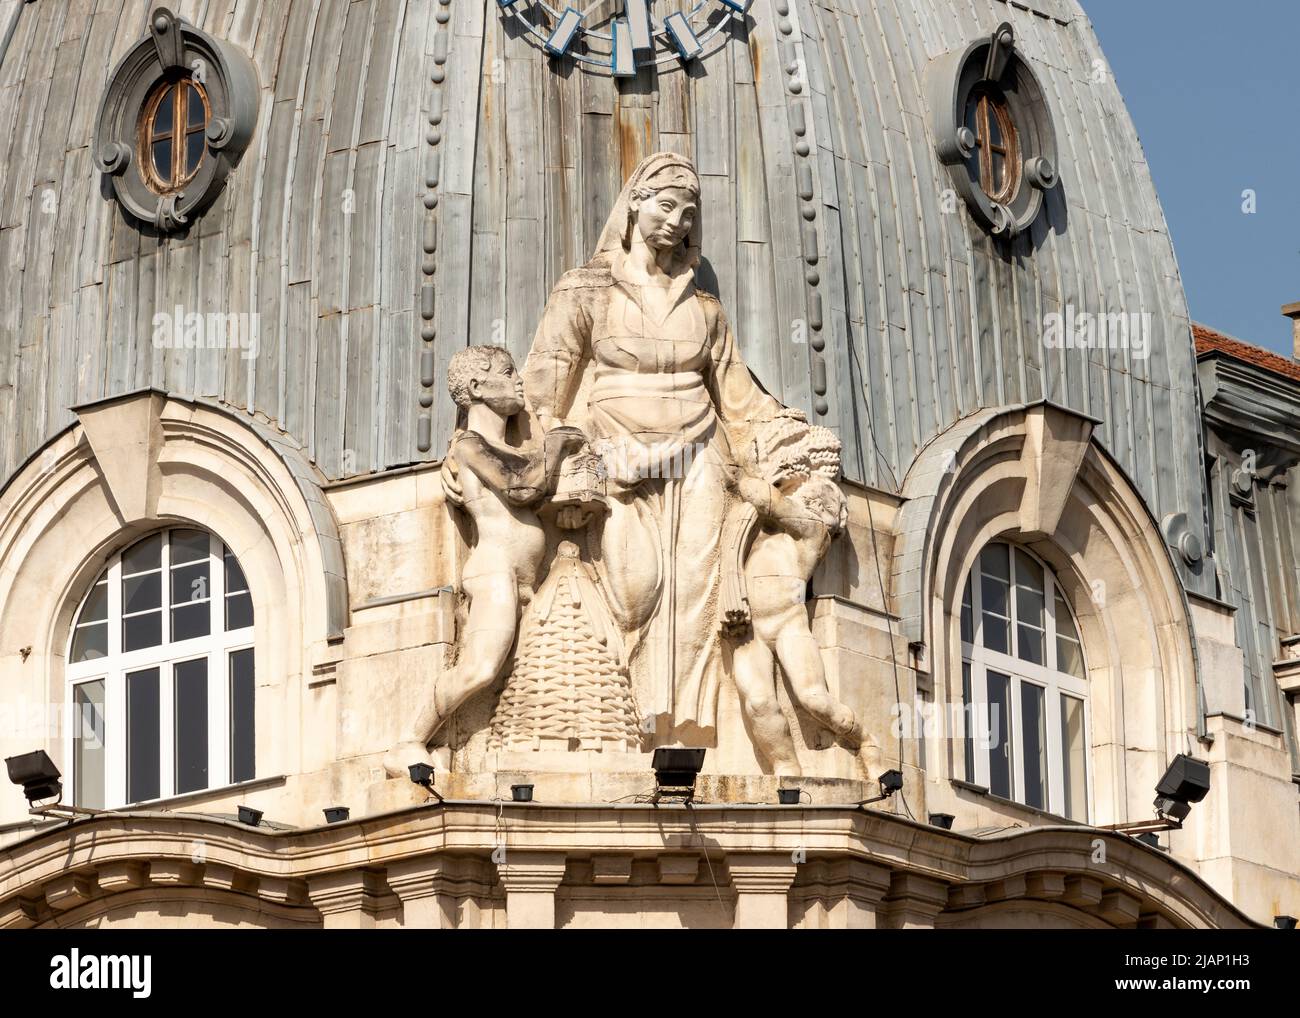 Statuen an der Fassade und architektonischen Details in Sofia, Bulgarien, Osteuropa, Balkan, EU Stockfoto